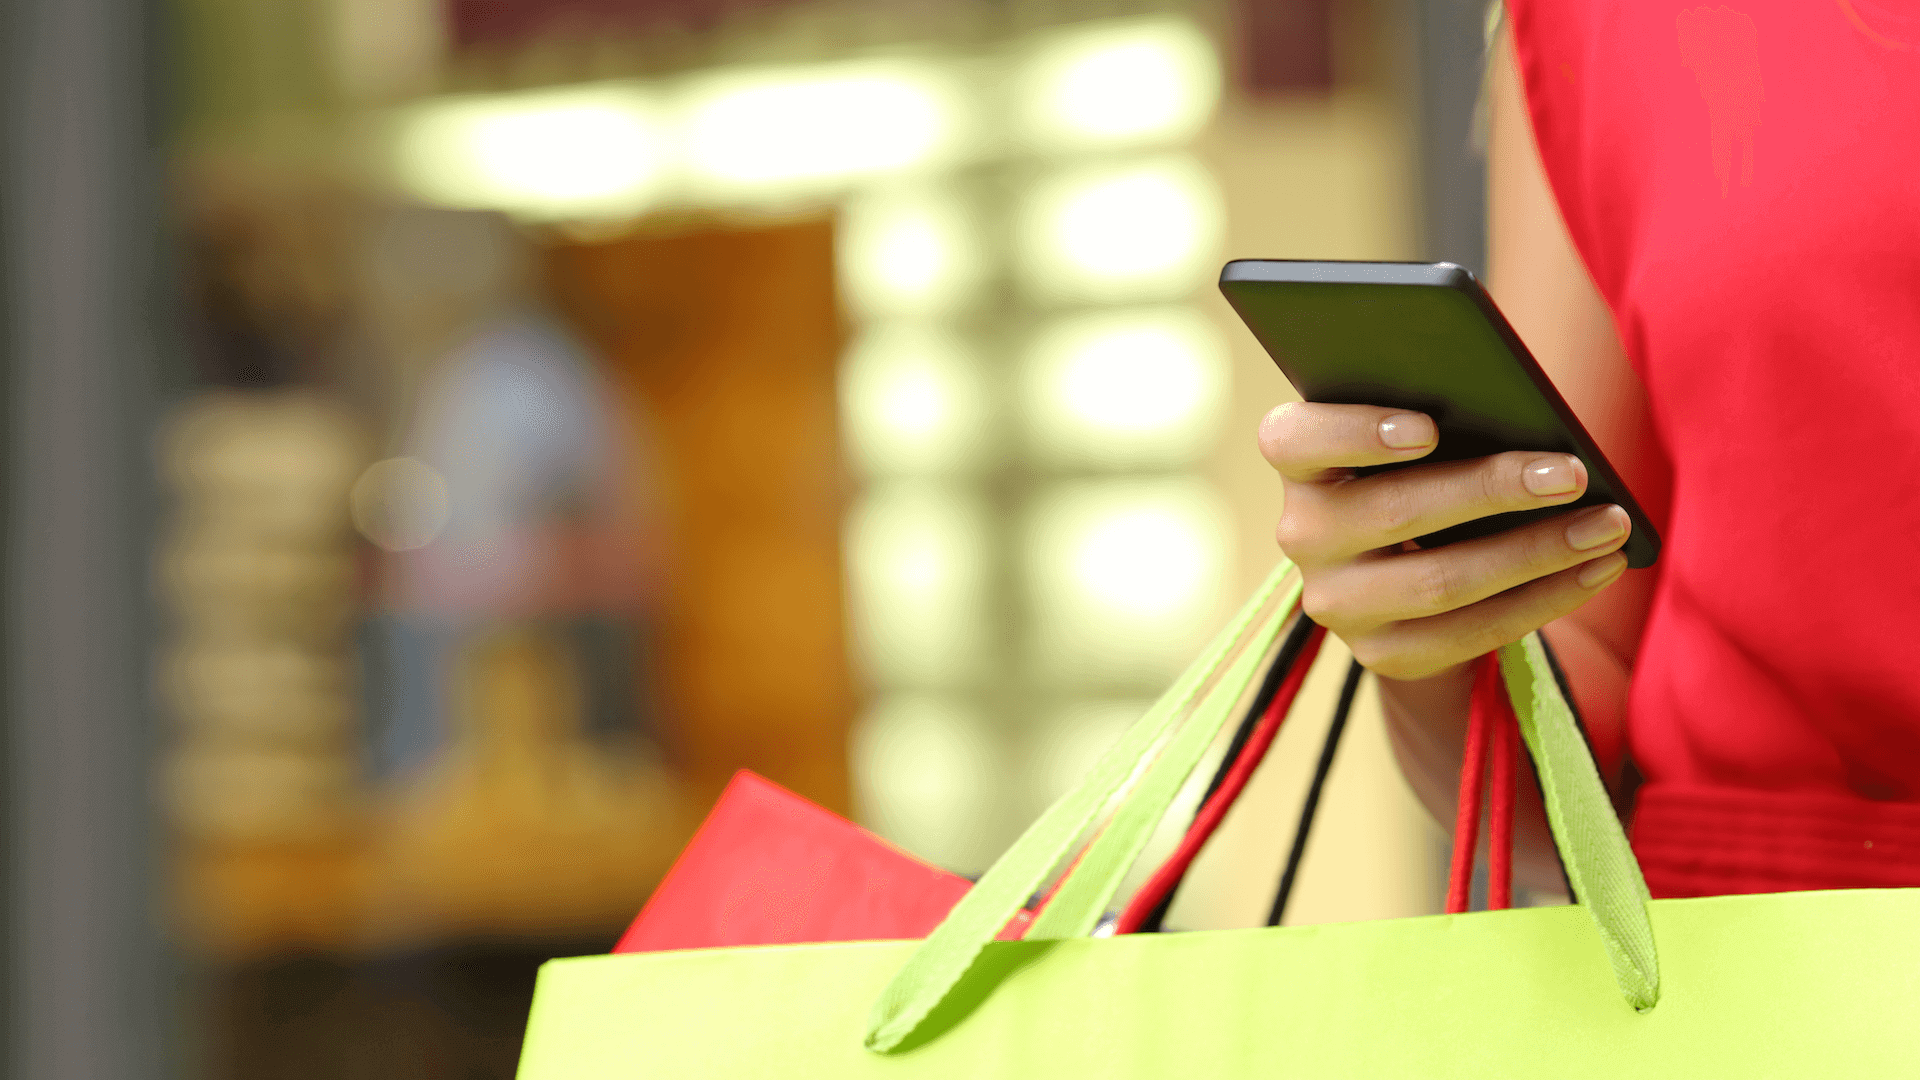  Como a pesquisa no celular est impulsionando a experincia atual de compras na loja fsica